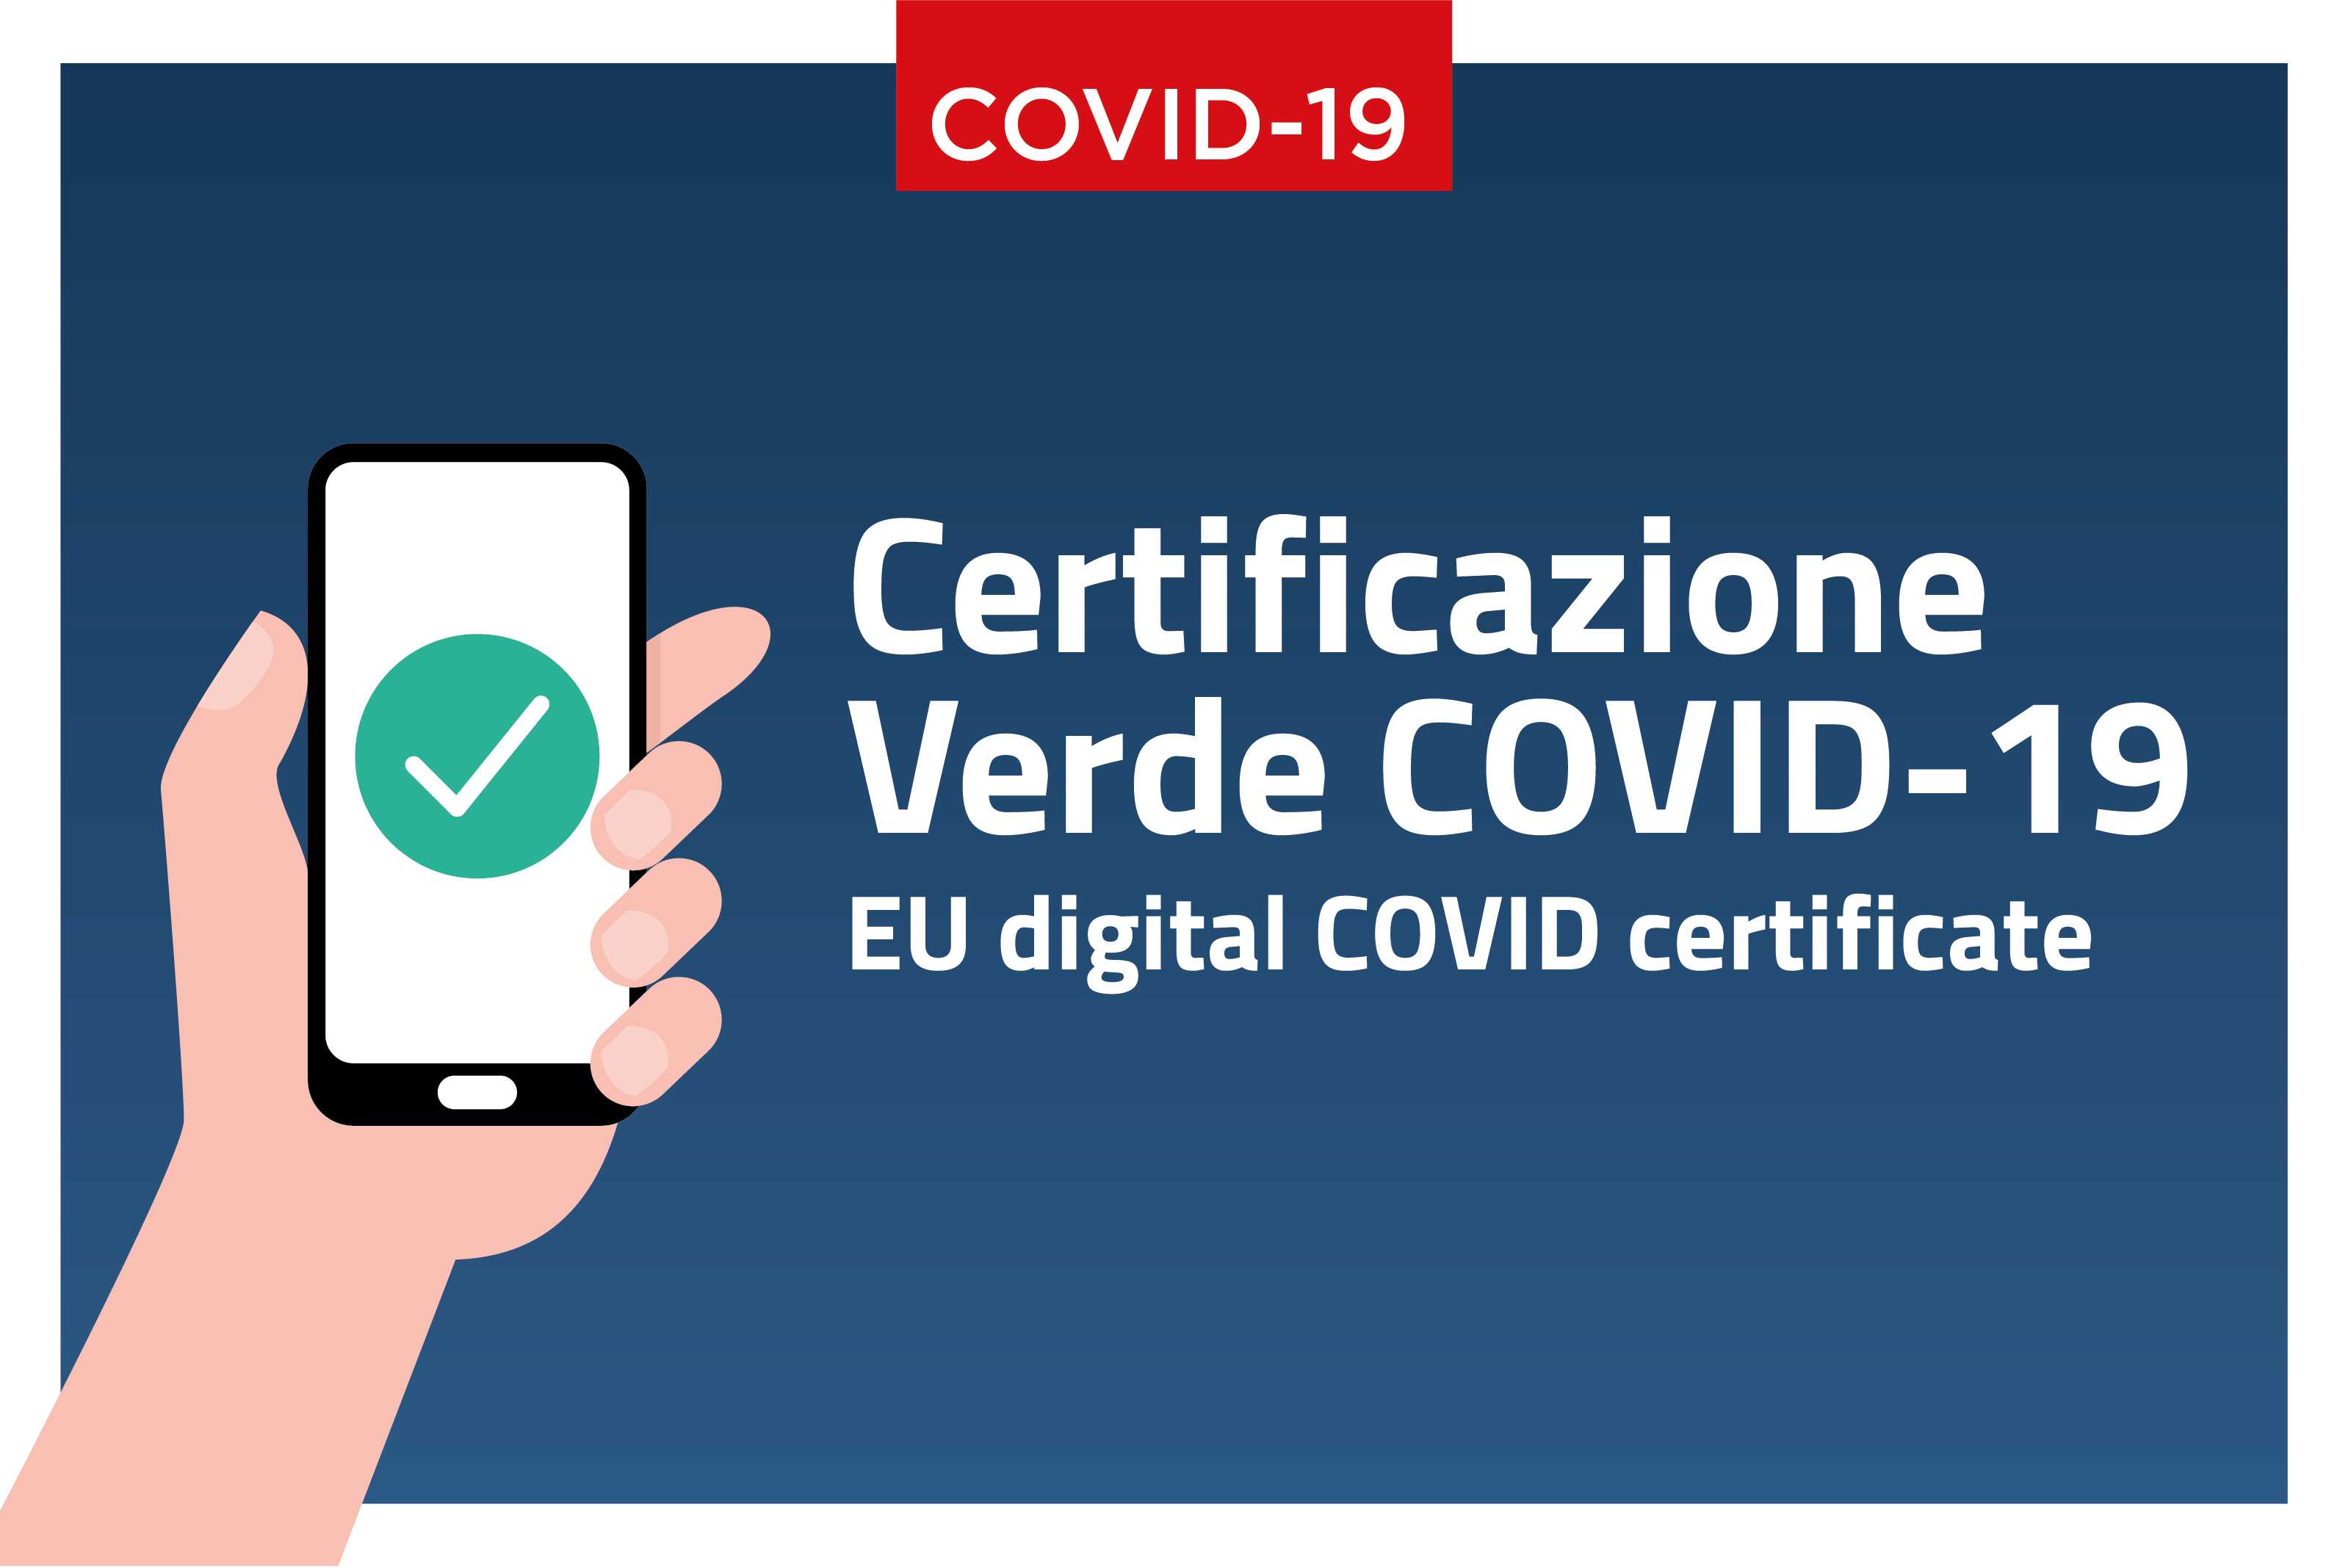 Certificazione verde COVID-19. EU digital COVID certificate. Leggi i dettagli